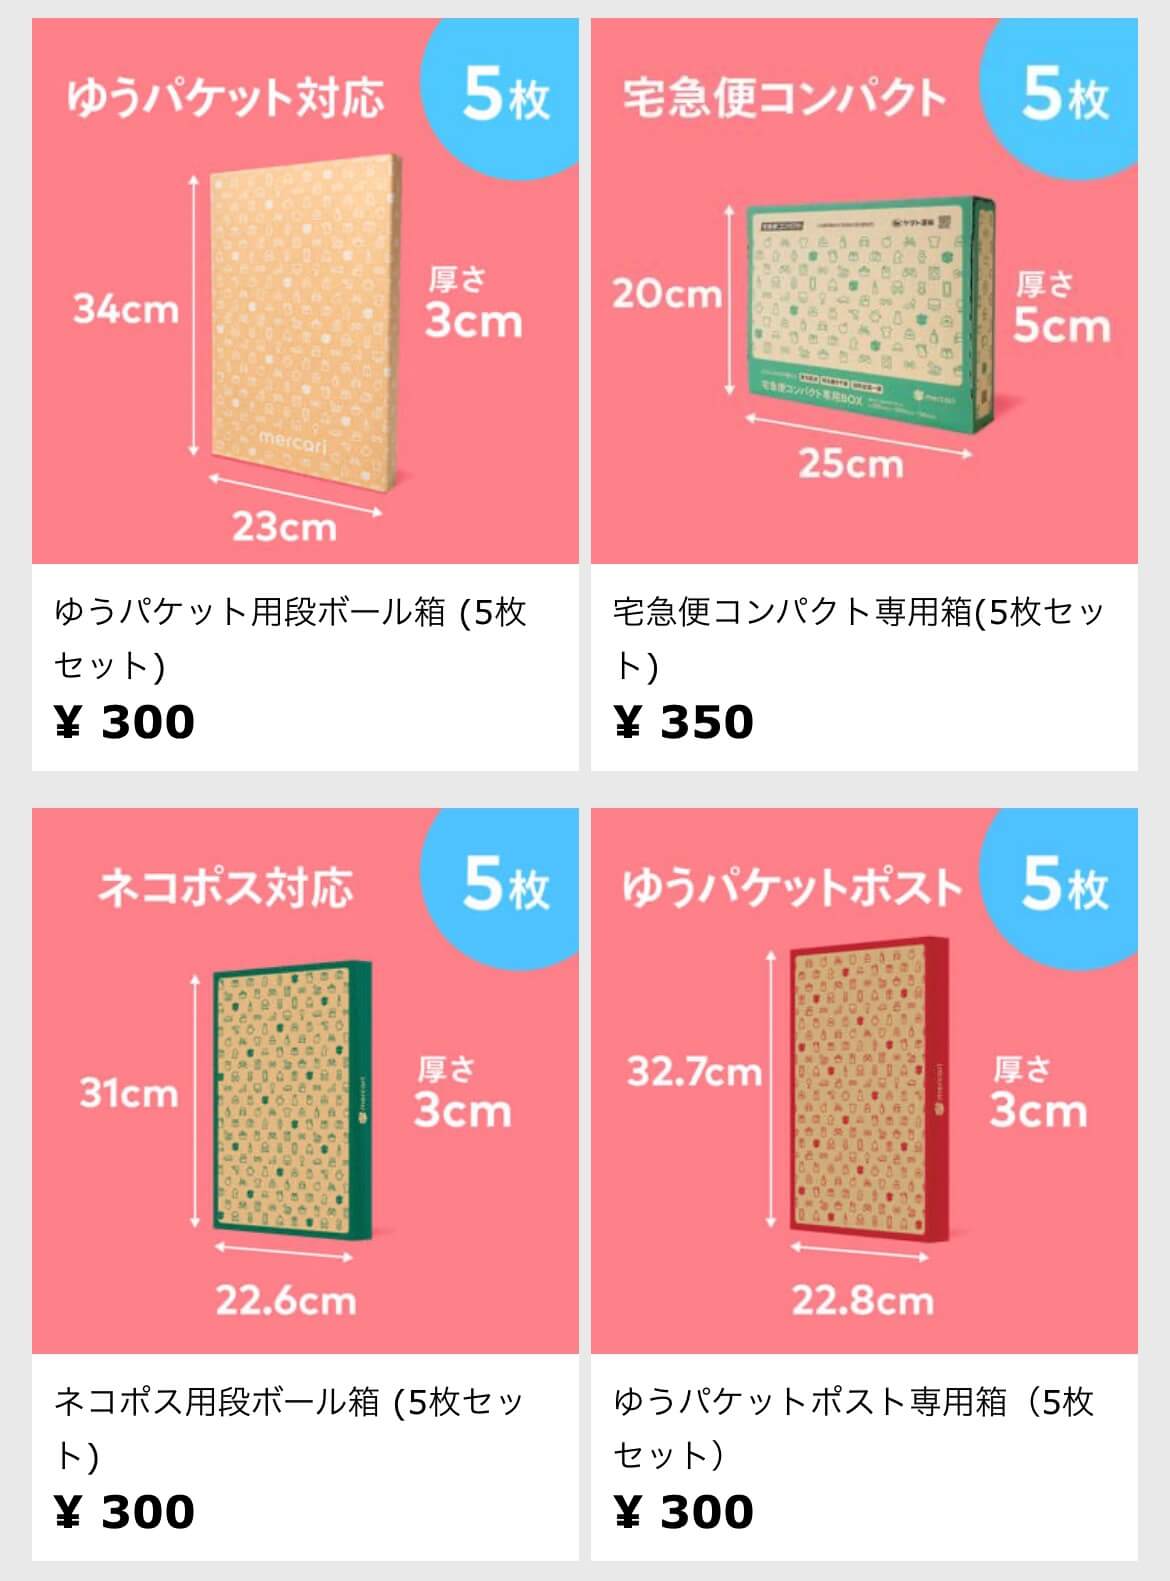 ゆうパケット用段ボール箱（5枚セット）¥300
宅急便コンパクト専用箱（5枚セット）¥350
ネコポス用段ボール箱（5枚セット）¥300
ゆうパケットポスト専用箱（5枚セット）¥300